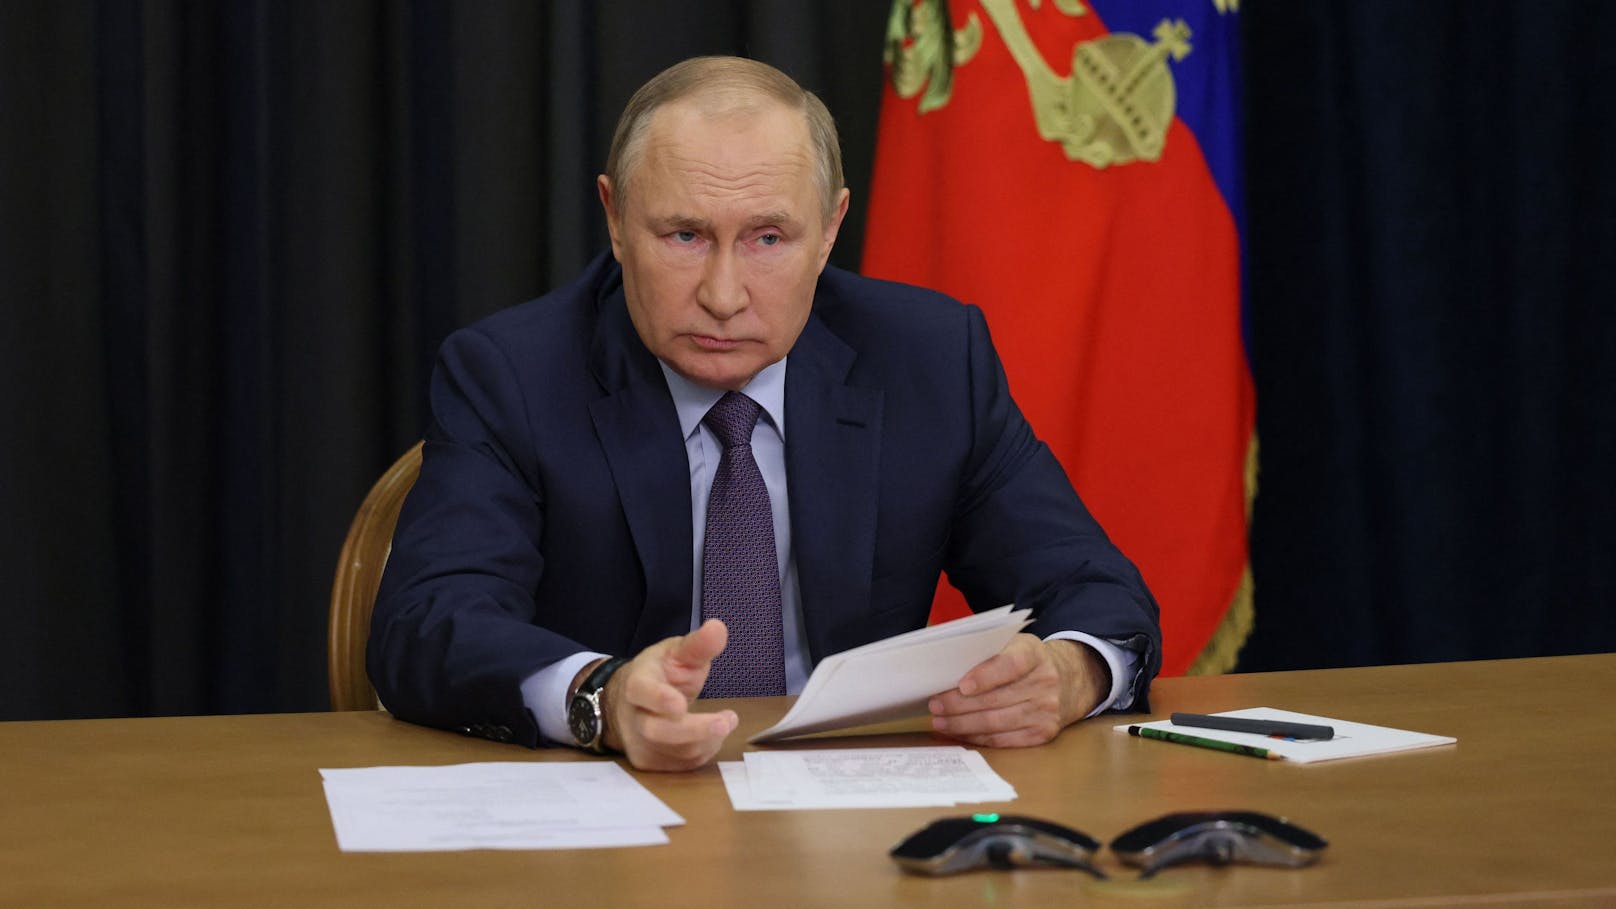  Bei einer Zeremonie am Freitag im Kreml mit Staatschef Wladimir Putin sollen die Abkommen über die Aufnahme dieser Regionen in die Russische Föderation unterzeichnet werden.